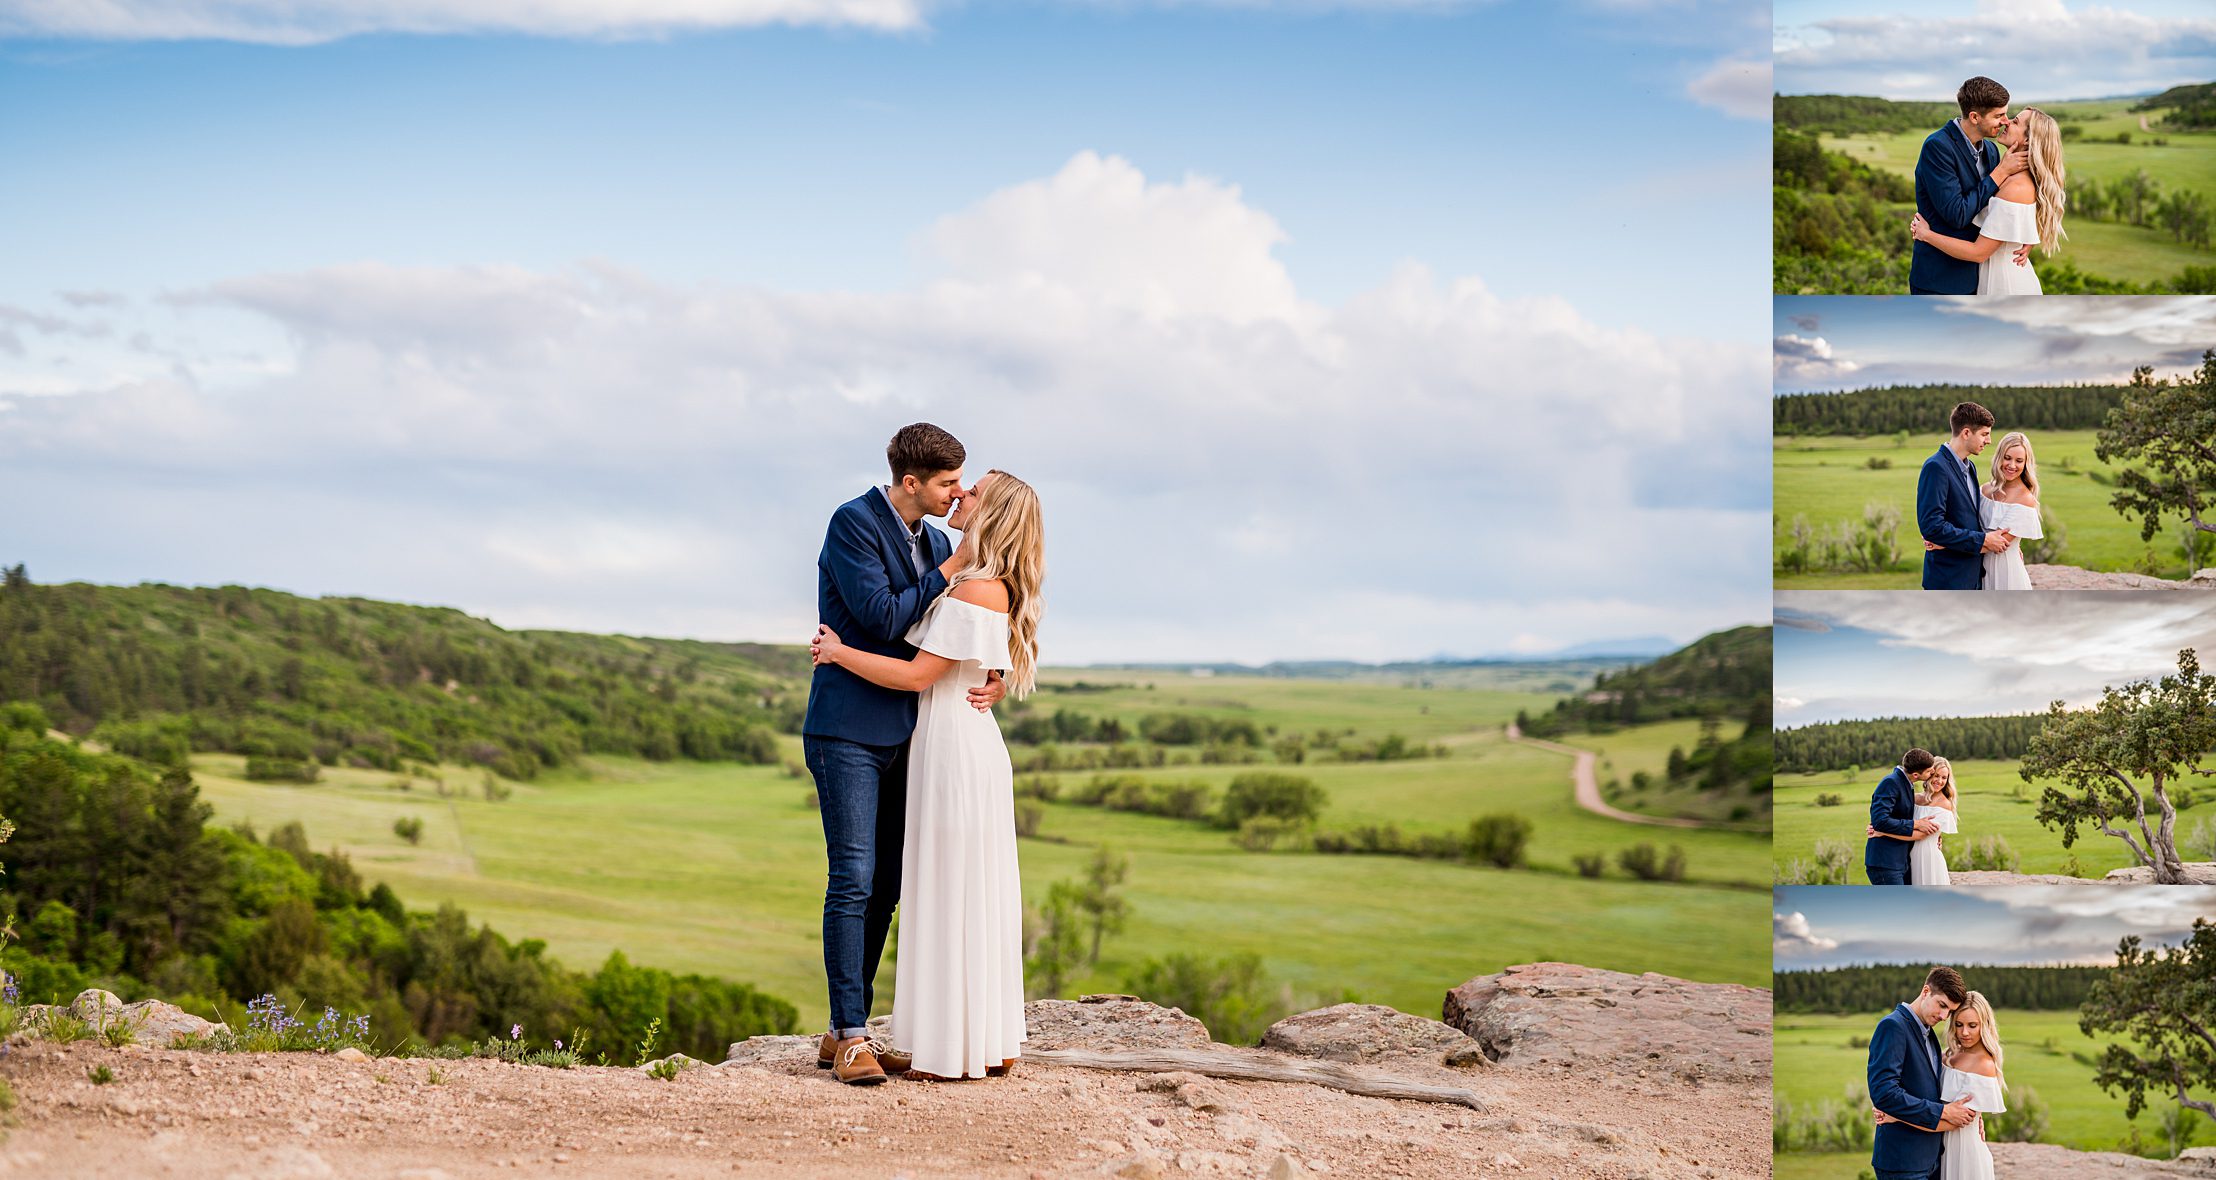 Colorado wedding photographer near Colorado Springs